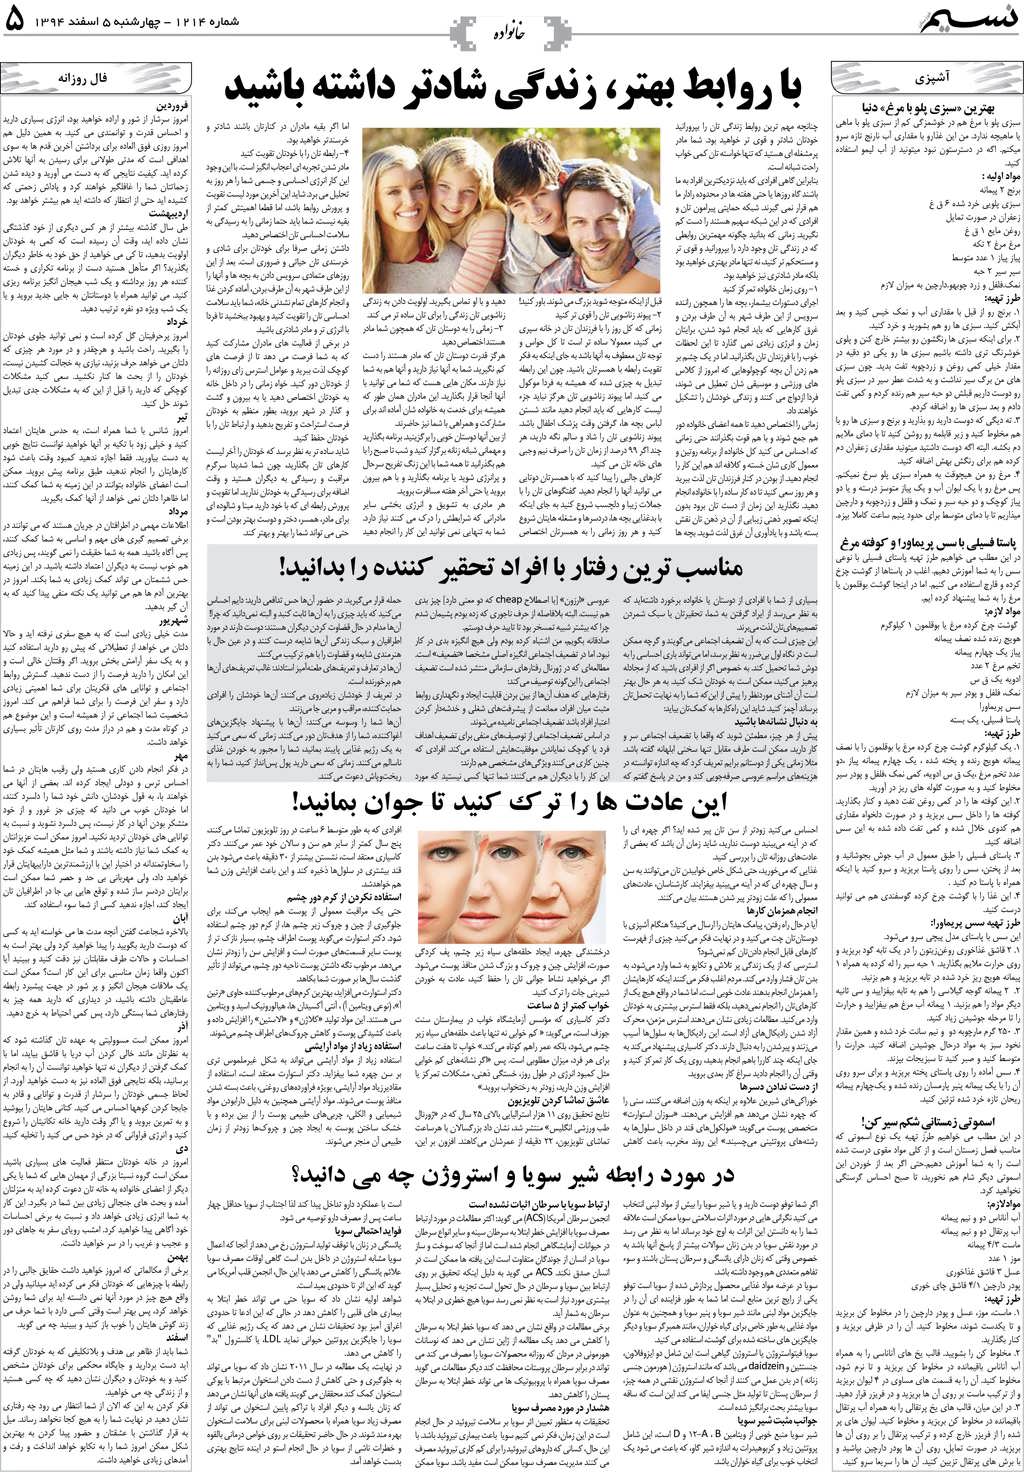 صفحه خانواده روزنامه نسیم شماره 1214